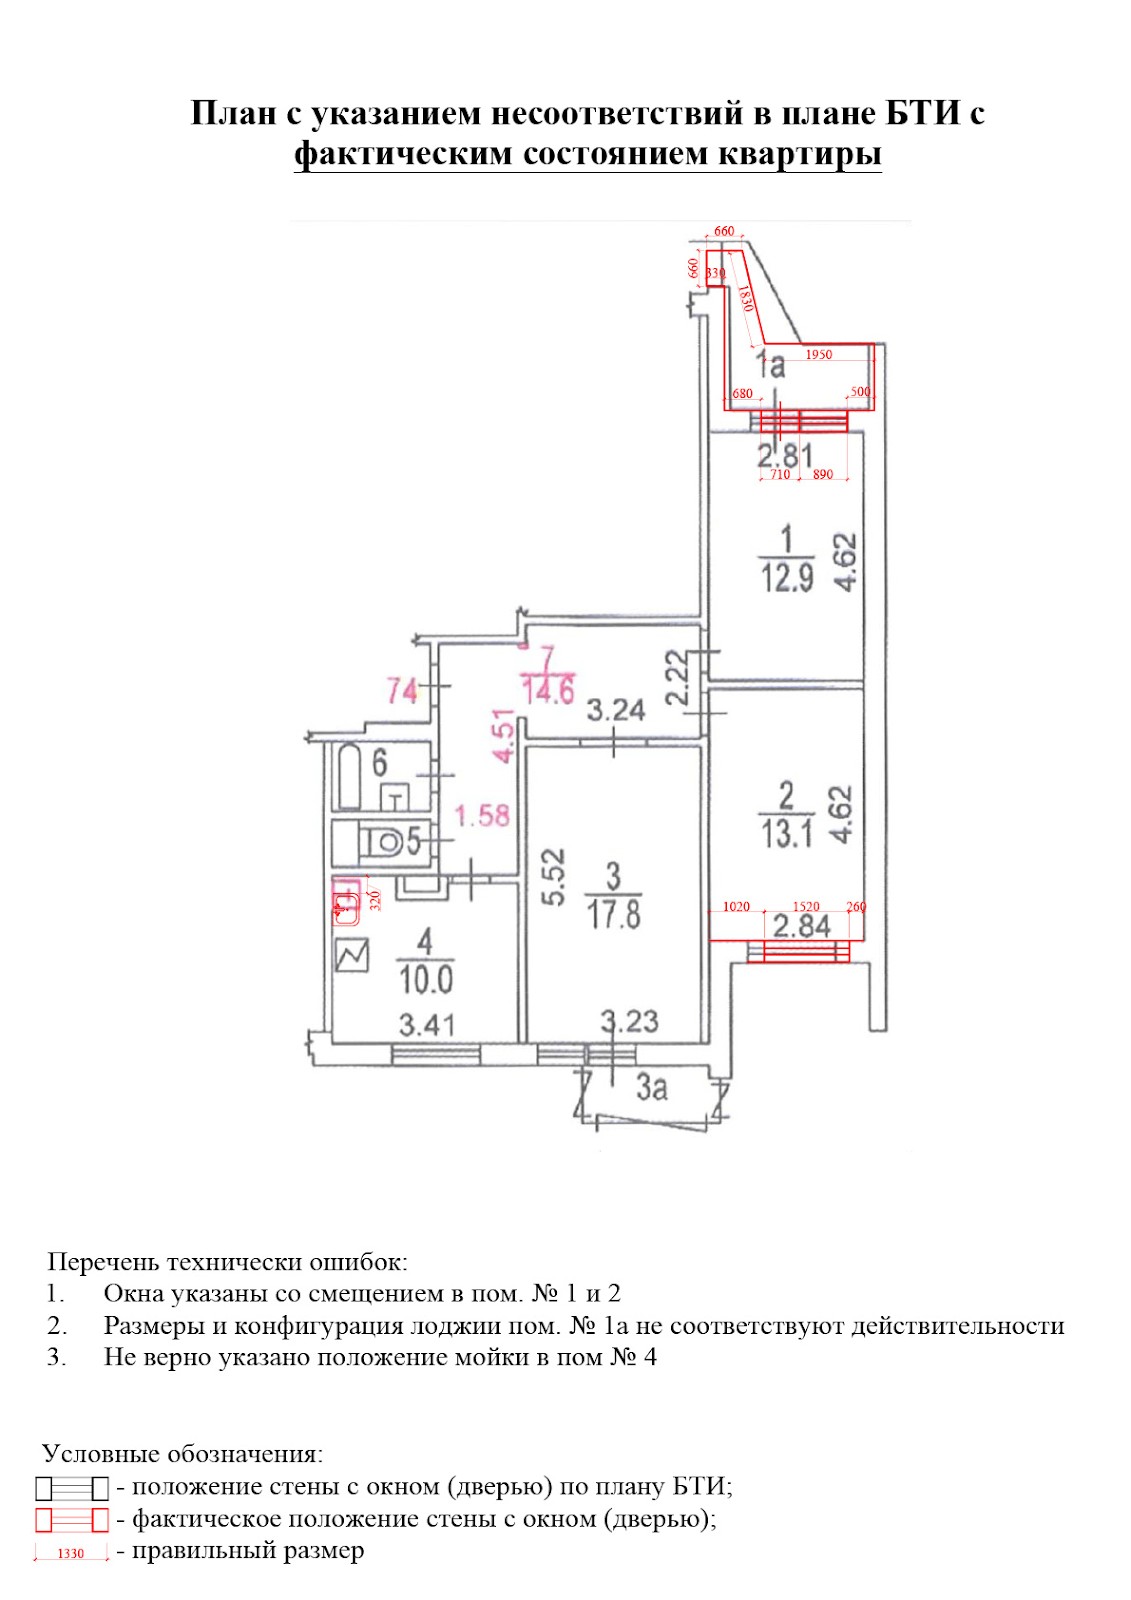 Пример поэтажного плана квартиры БТИ с «красными линиями»